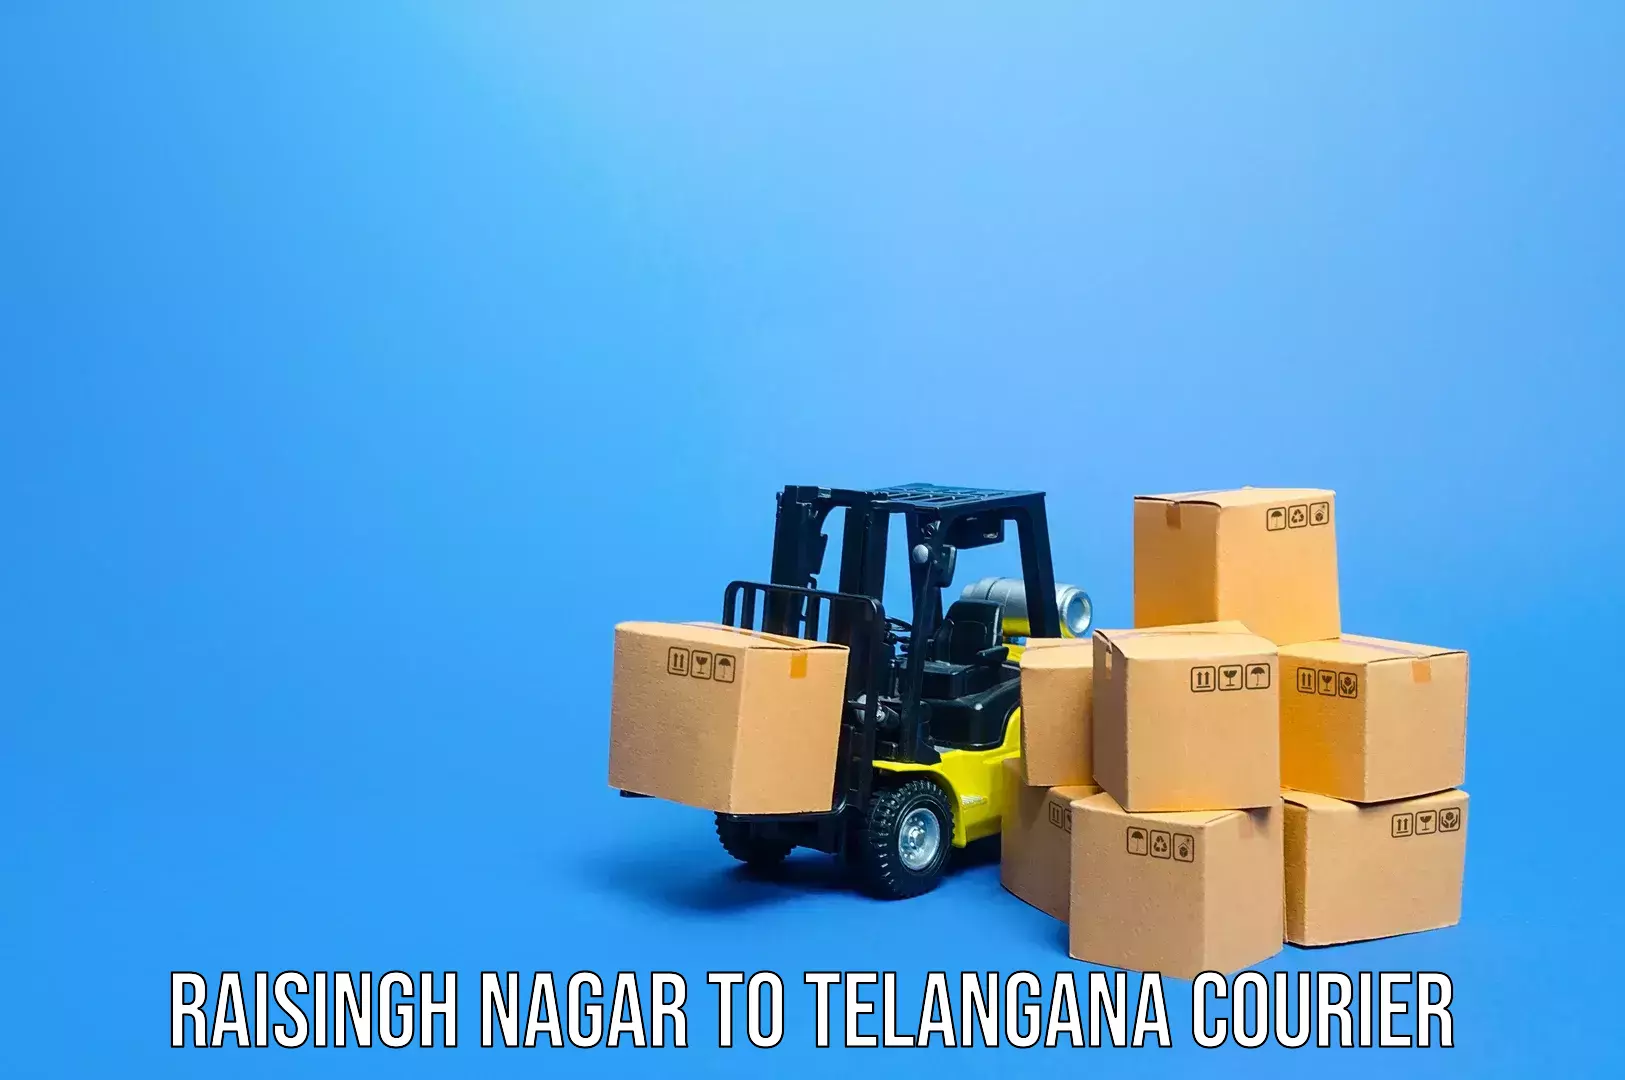 Luggage shipment specialists Raisingh Nagar to Mahabub Nagar